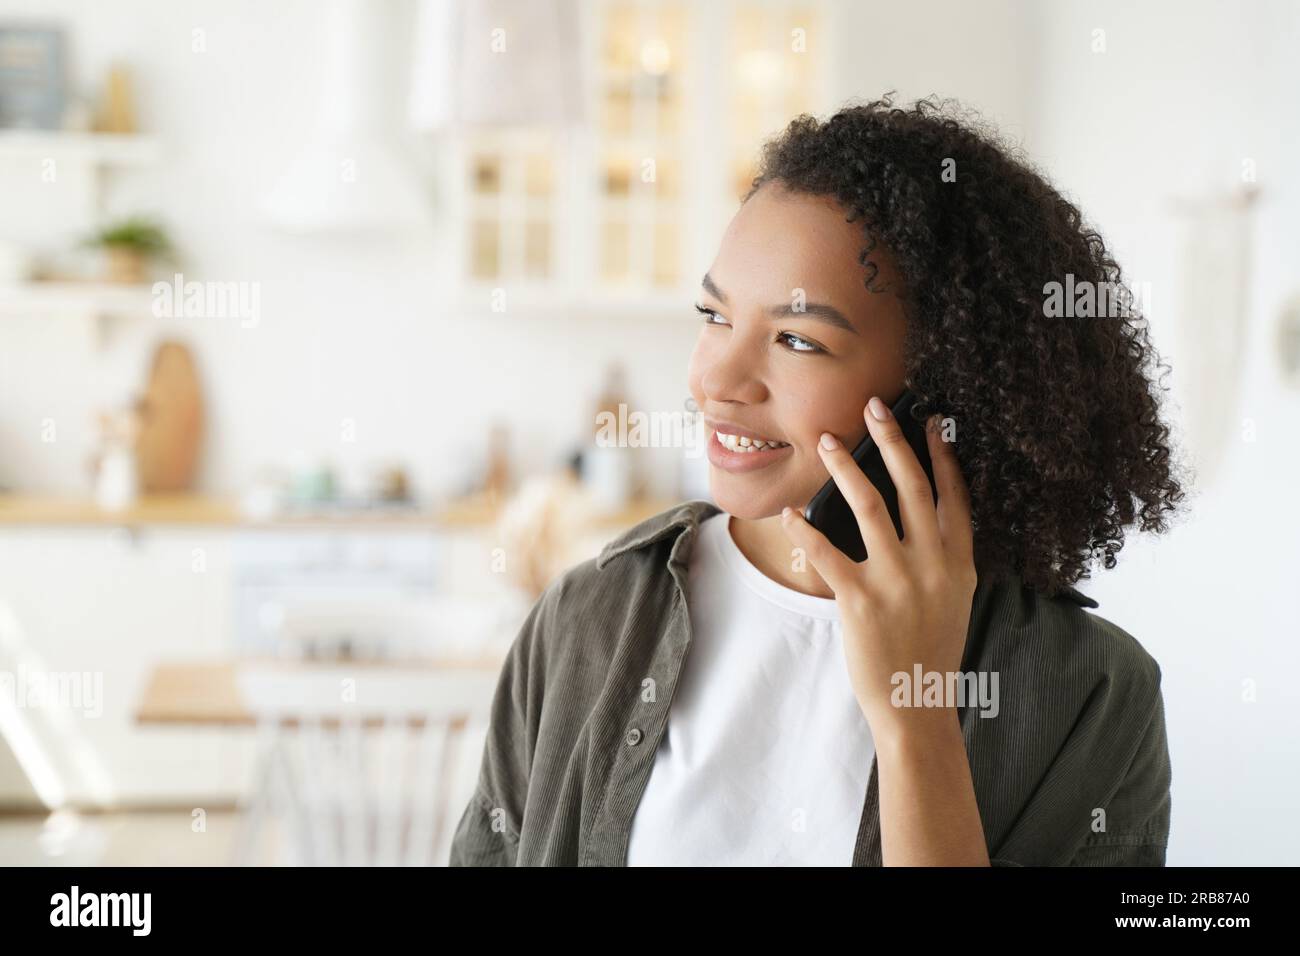 La ragazza amichevole con i capelli afro parla al telefono a casa. L'adolescente sorridente si diverte a conversare piacevolmente al chiuso. Foto Stock